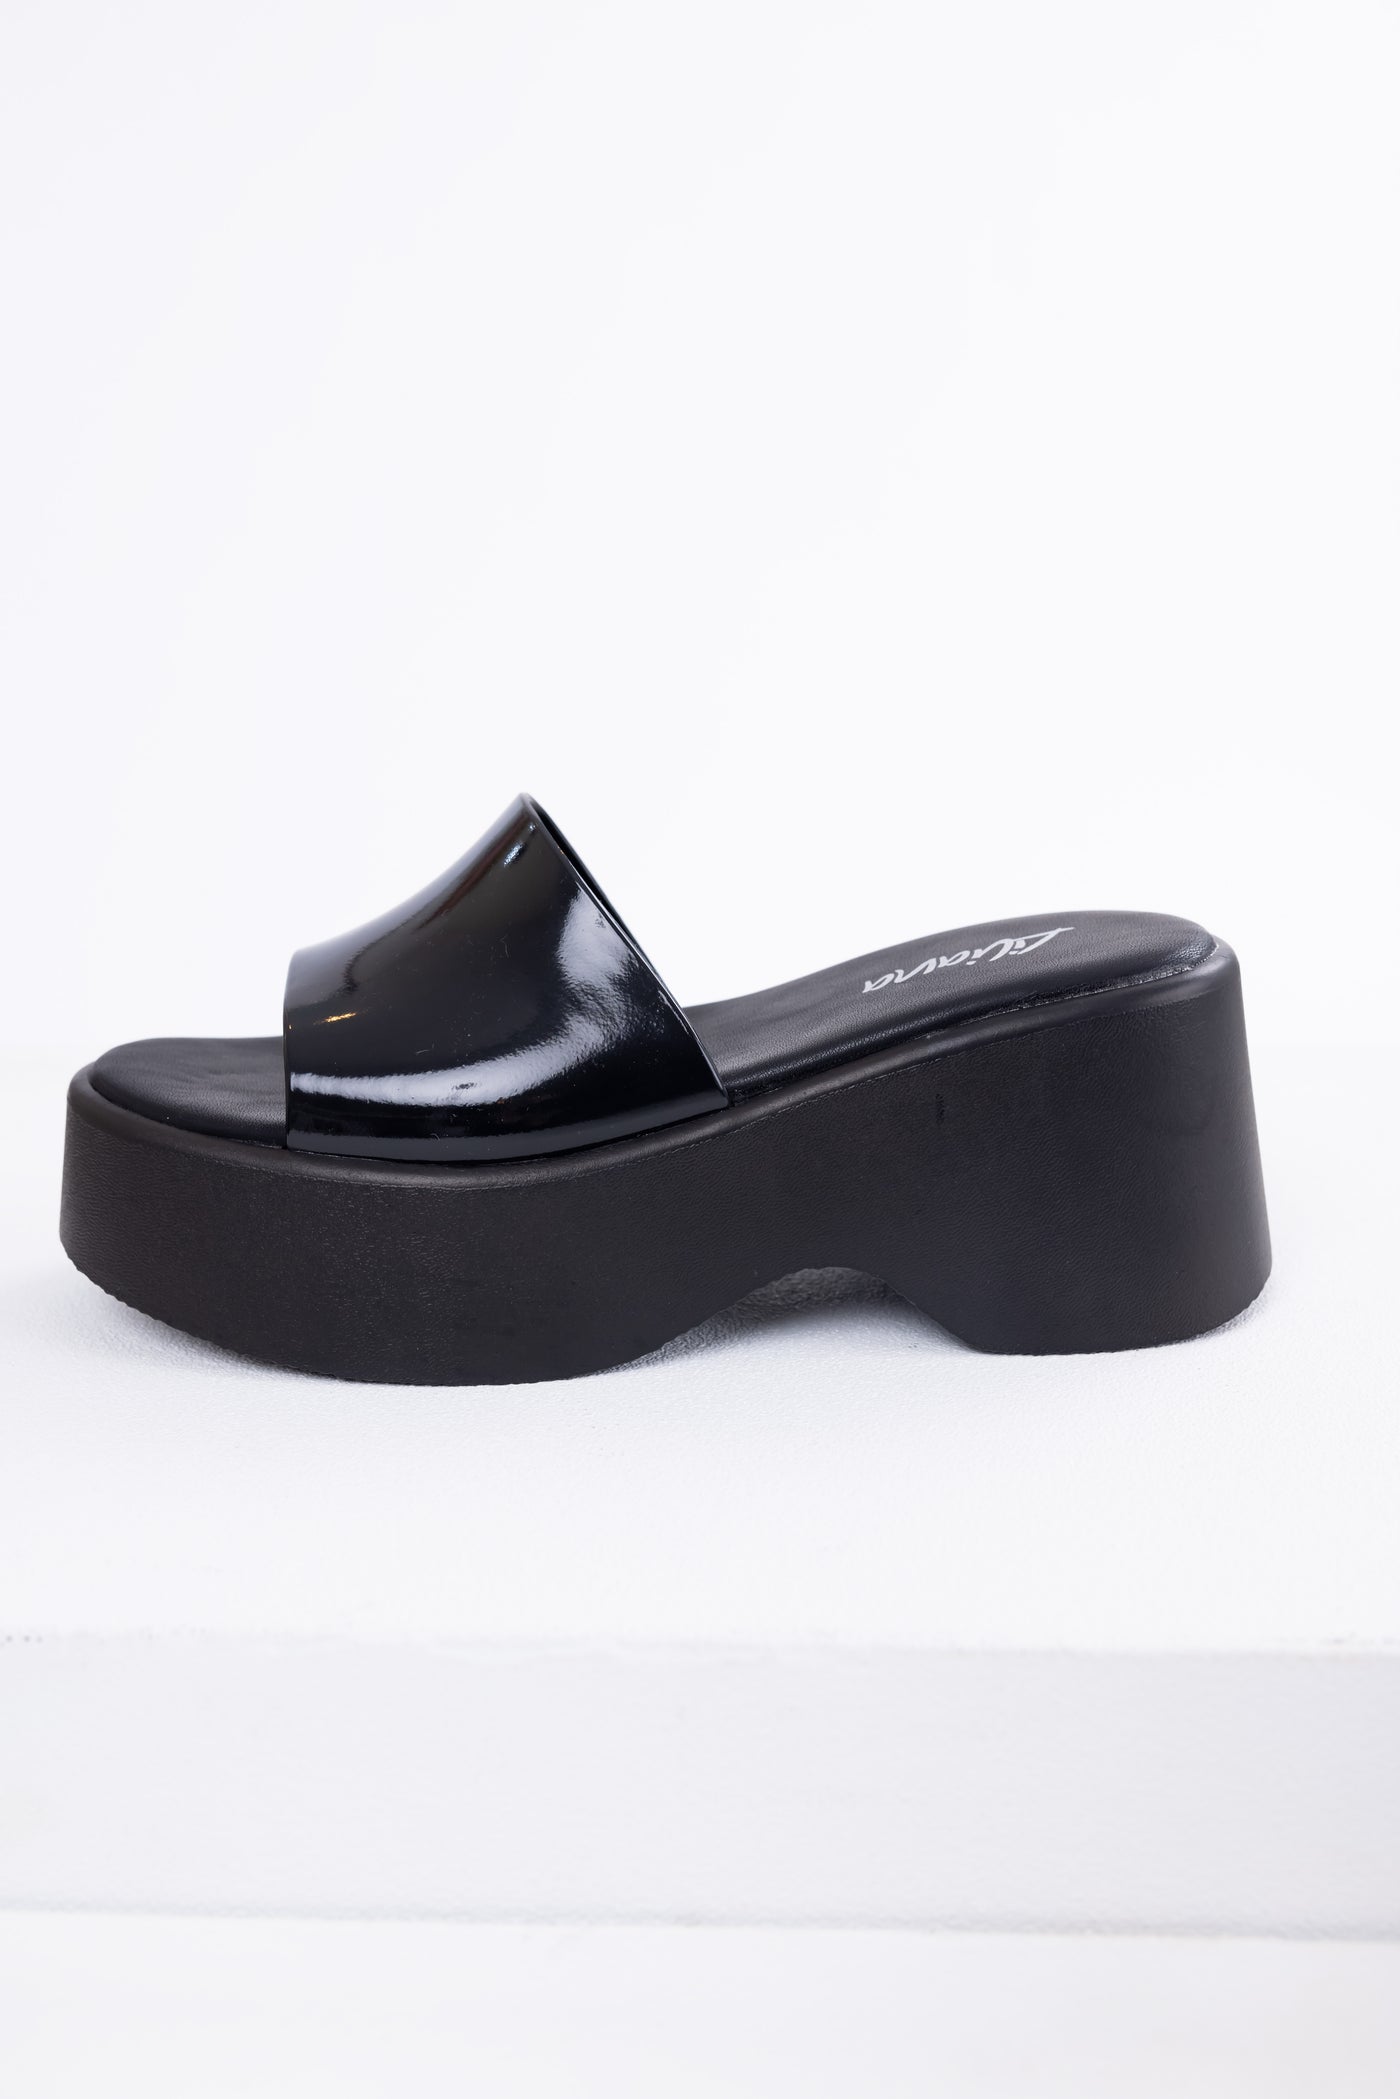 Black Single Band Platform Wedge Sandals